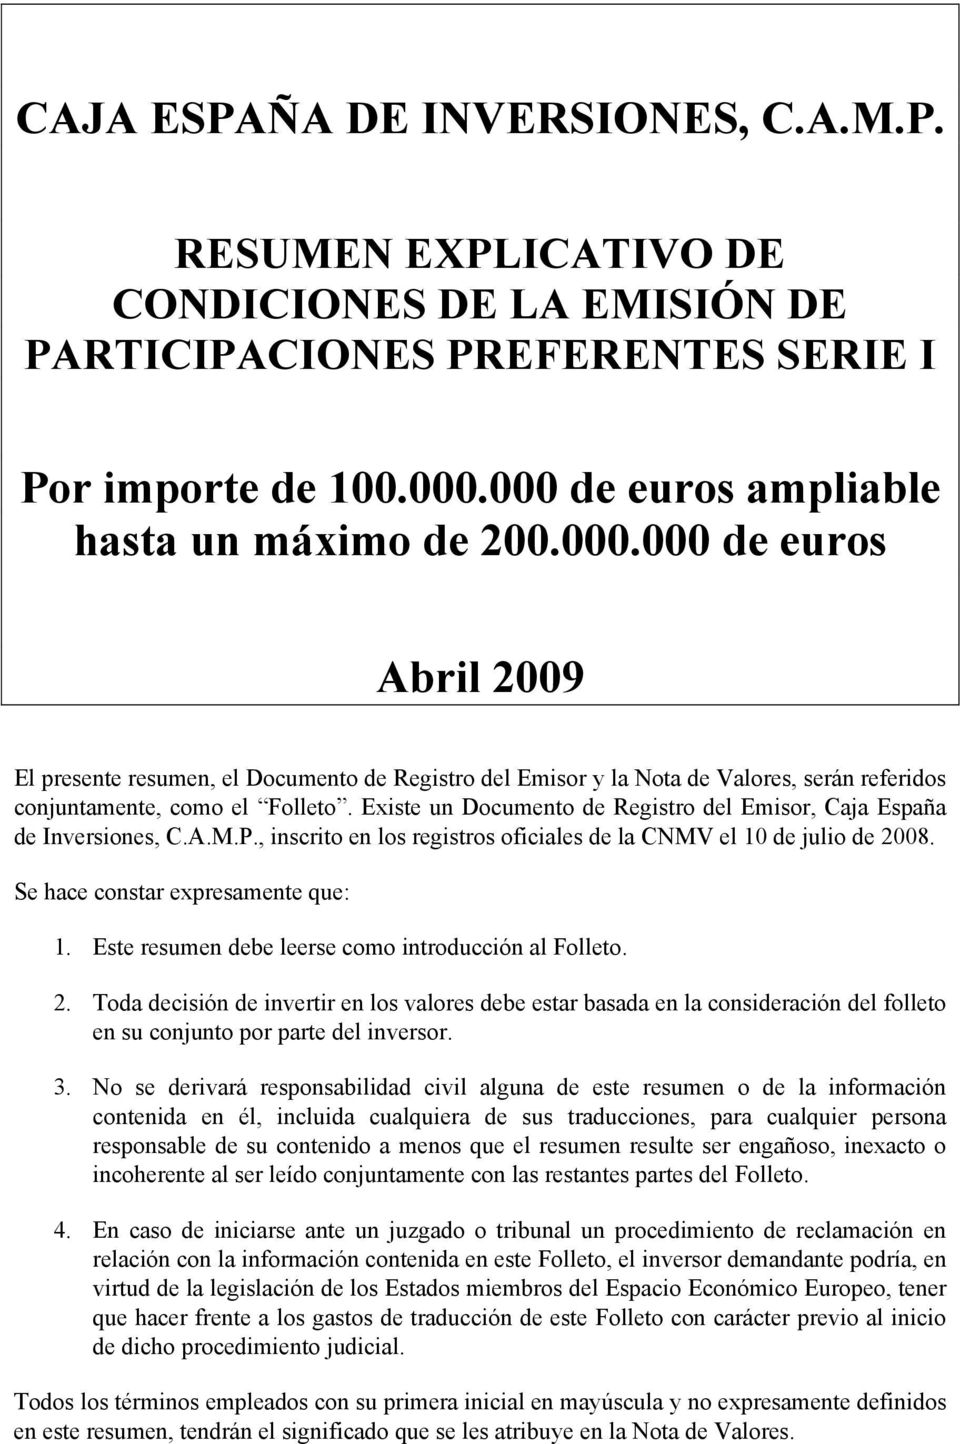 Existe un Documento de Registro del Emisor, Caja España de Inversiones, C.A.M.P., inscrito en los registros oficiales de la CNMV el 10 de julio de 2008. Se hace constar expresamente que: 1.